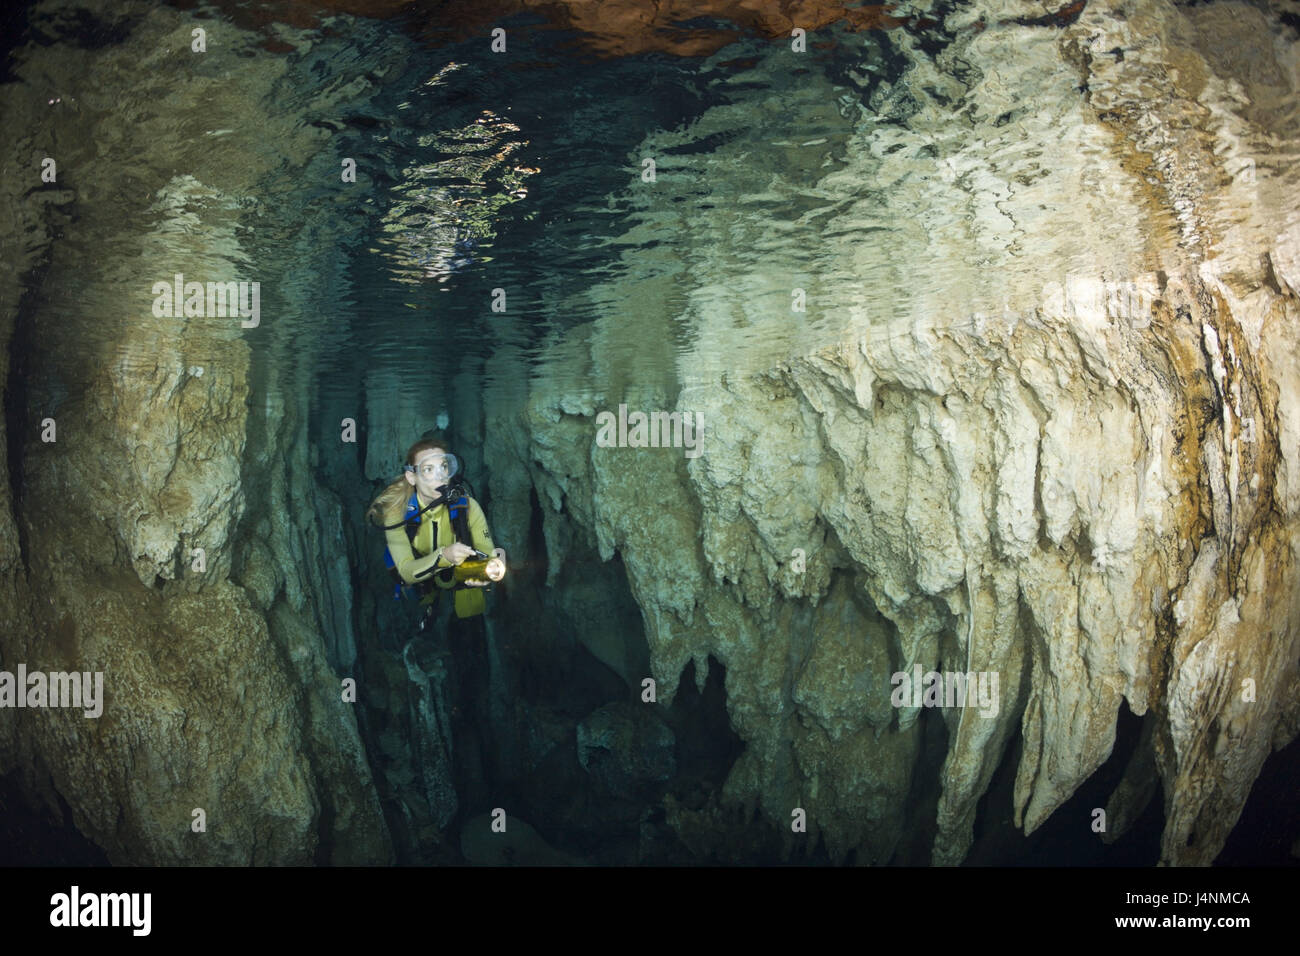 L'enregistrement sous-marin, Palaos, Chandelier Cave, grotte de calcaire sous-marine, plongeur, le modèle ne libération, Banque D'Images